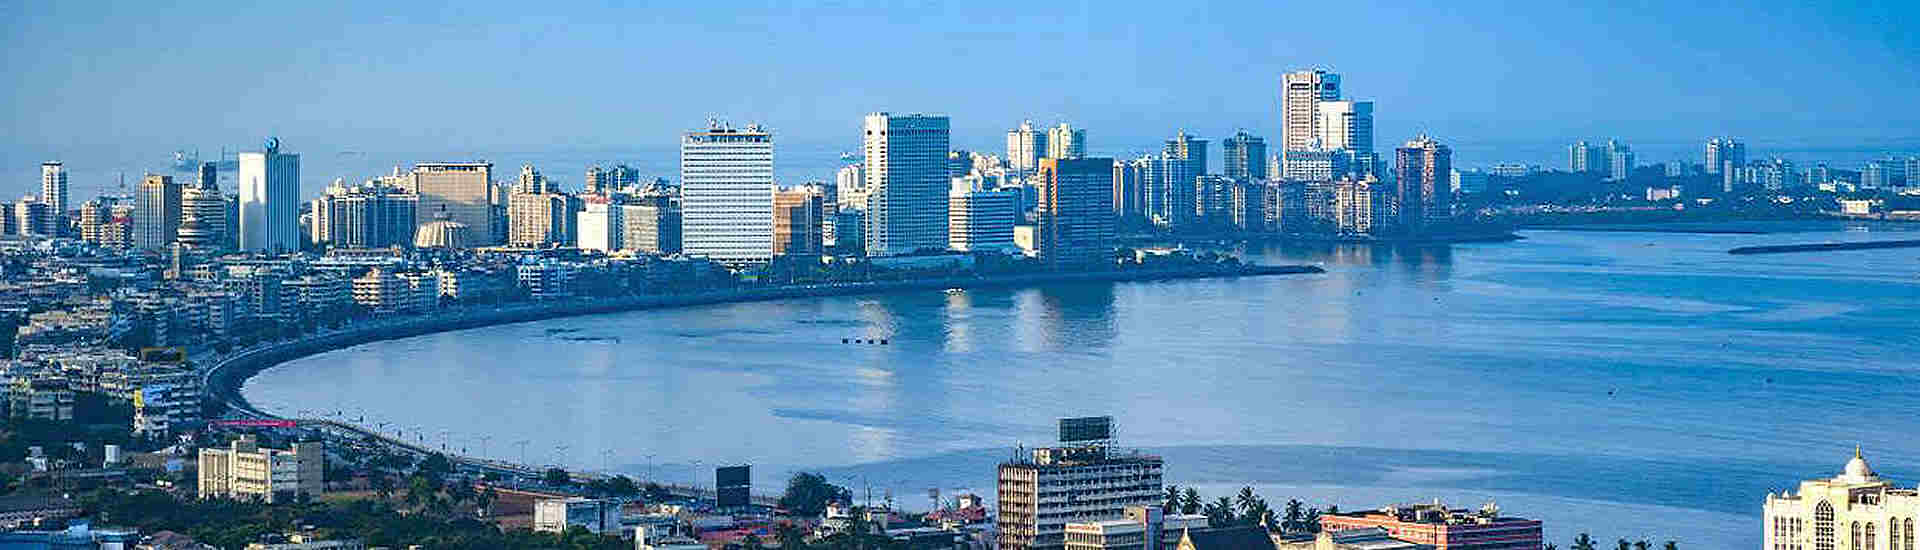 Bild der beeindruckenden Skyline von Mumbai (früher Bombay), einer der faszinierendsten Sehenswürdigkeiten Indiens